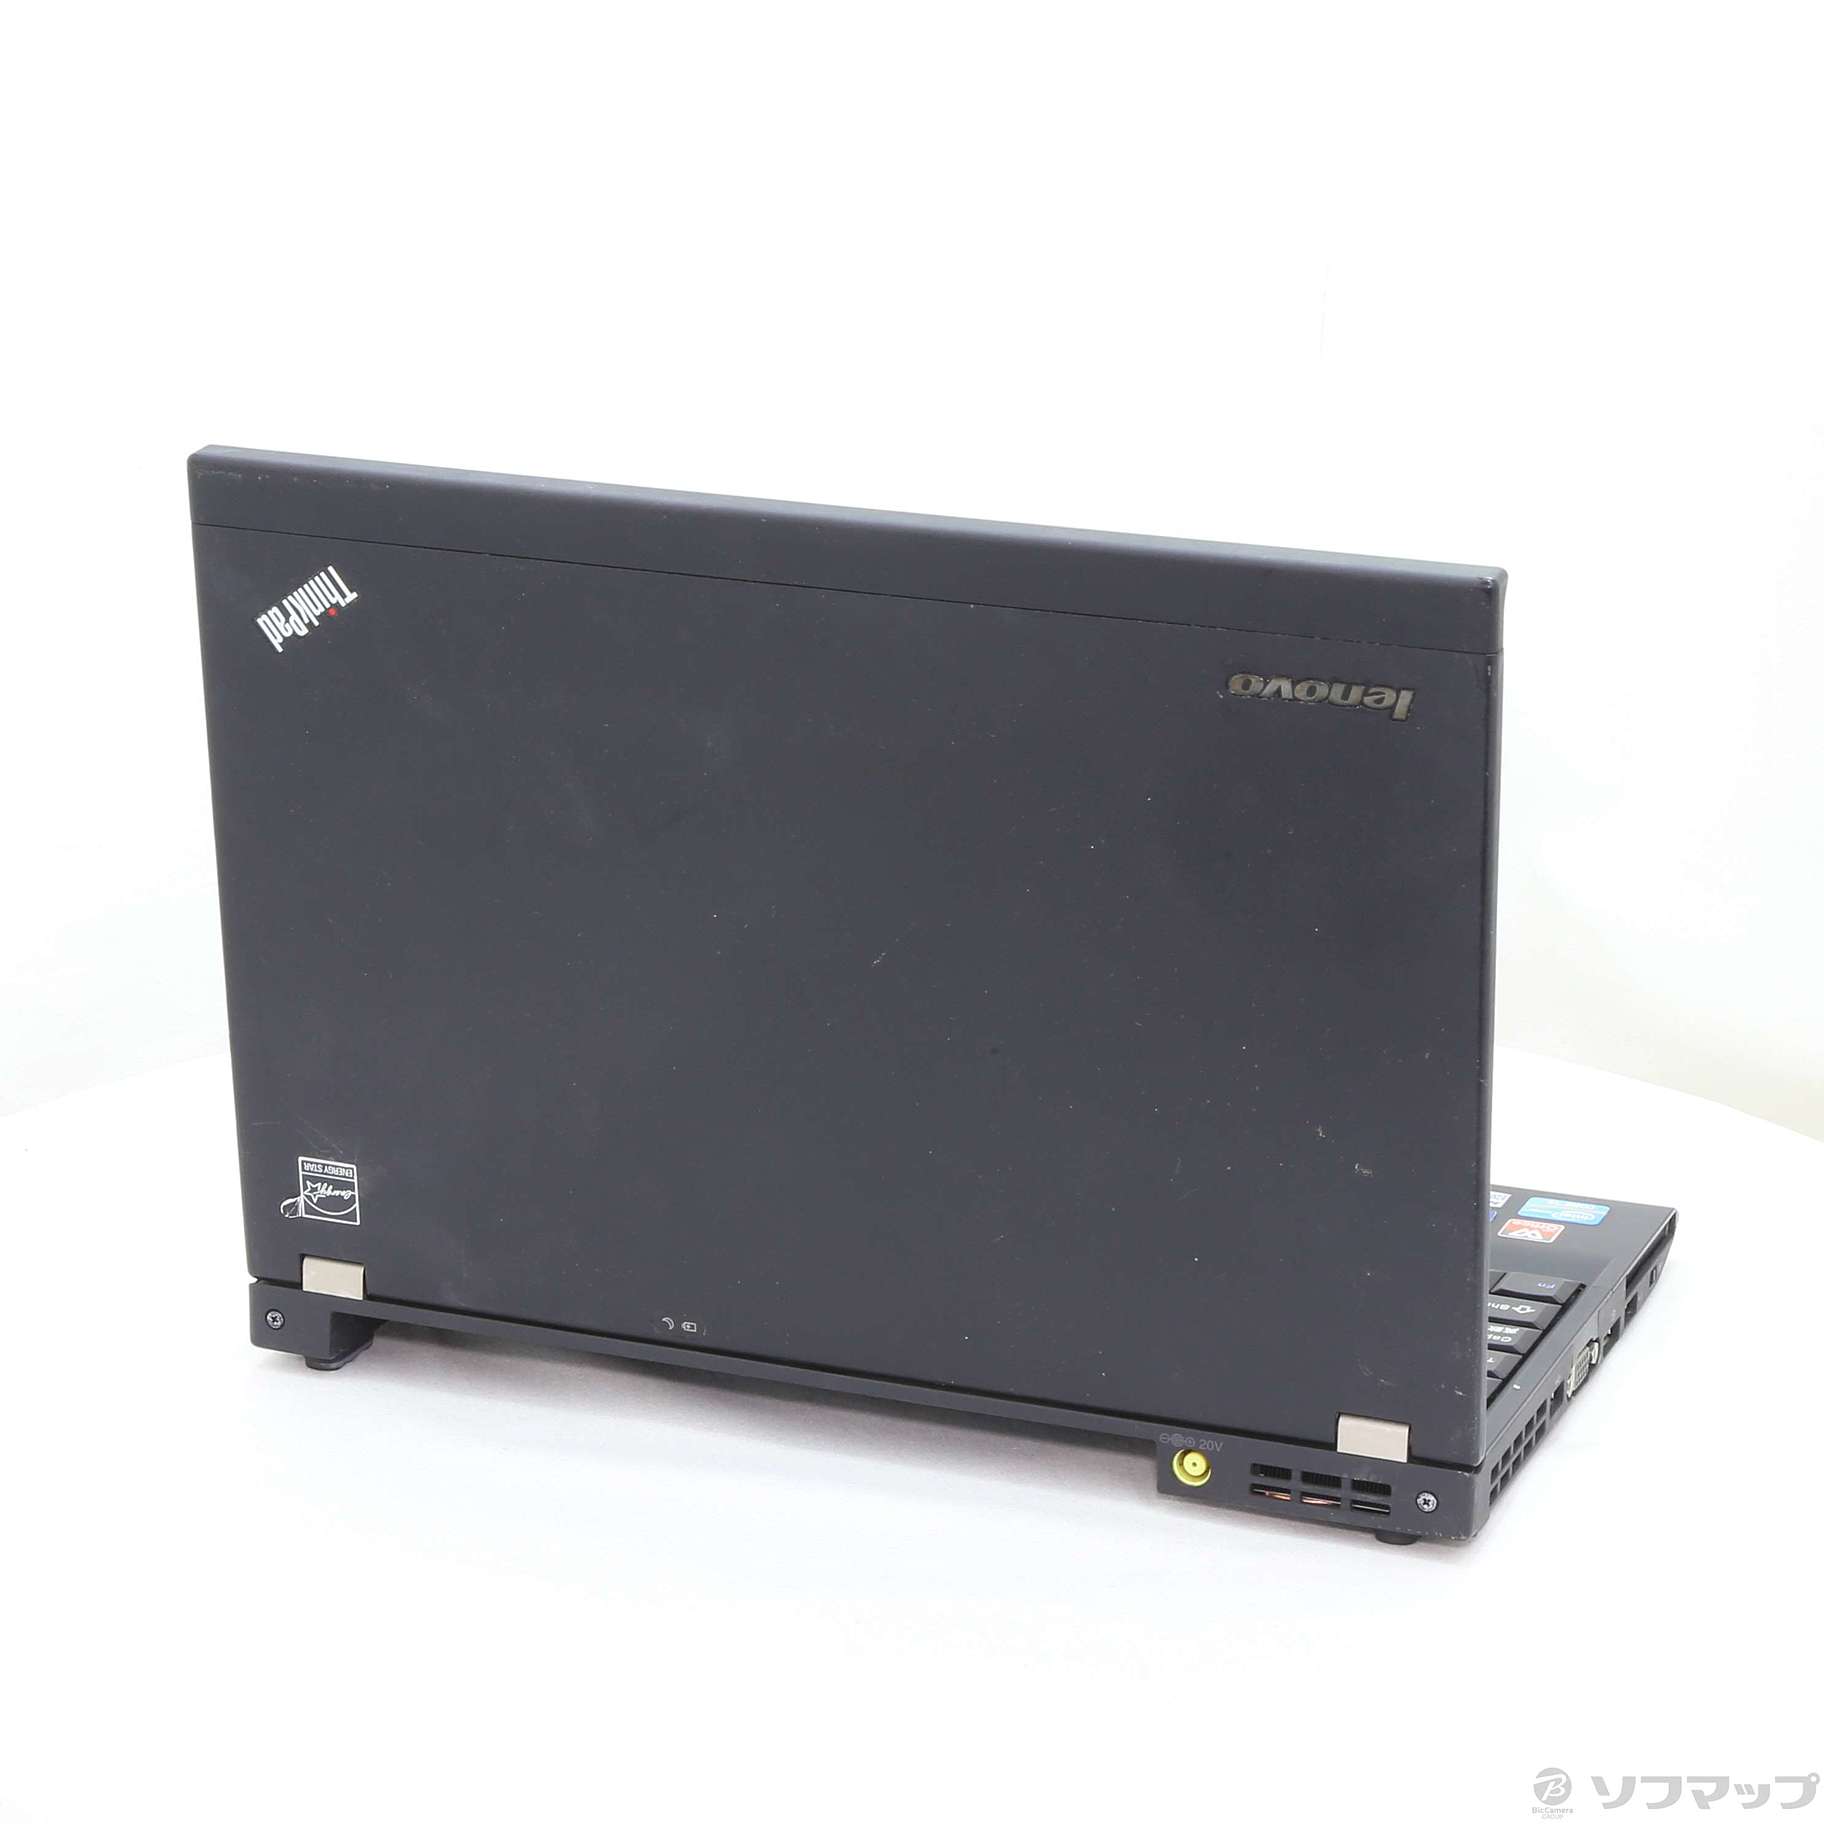 ThinkPad X220 ノートパソコン